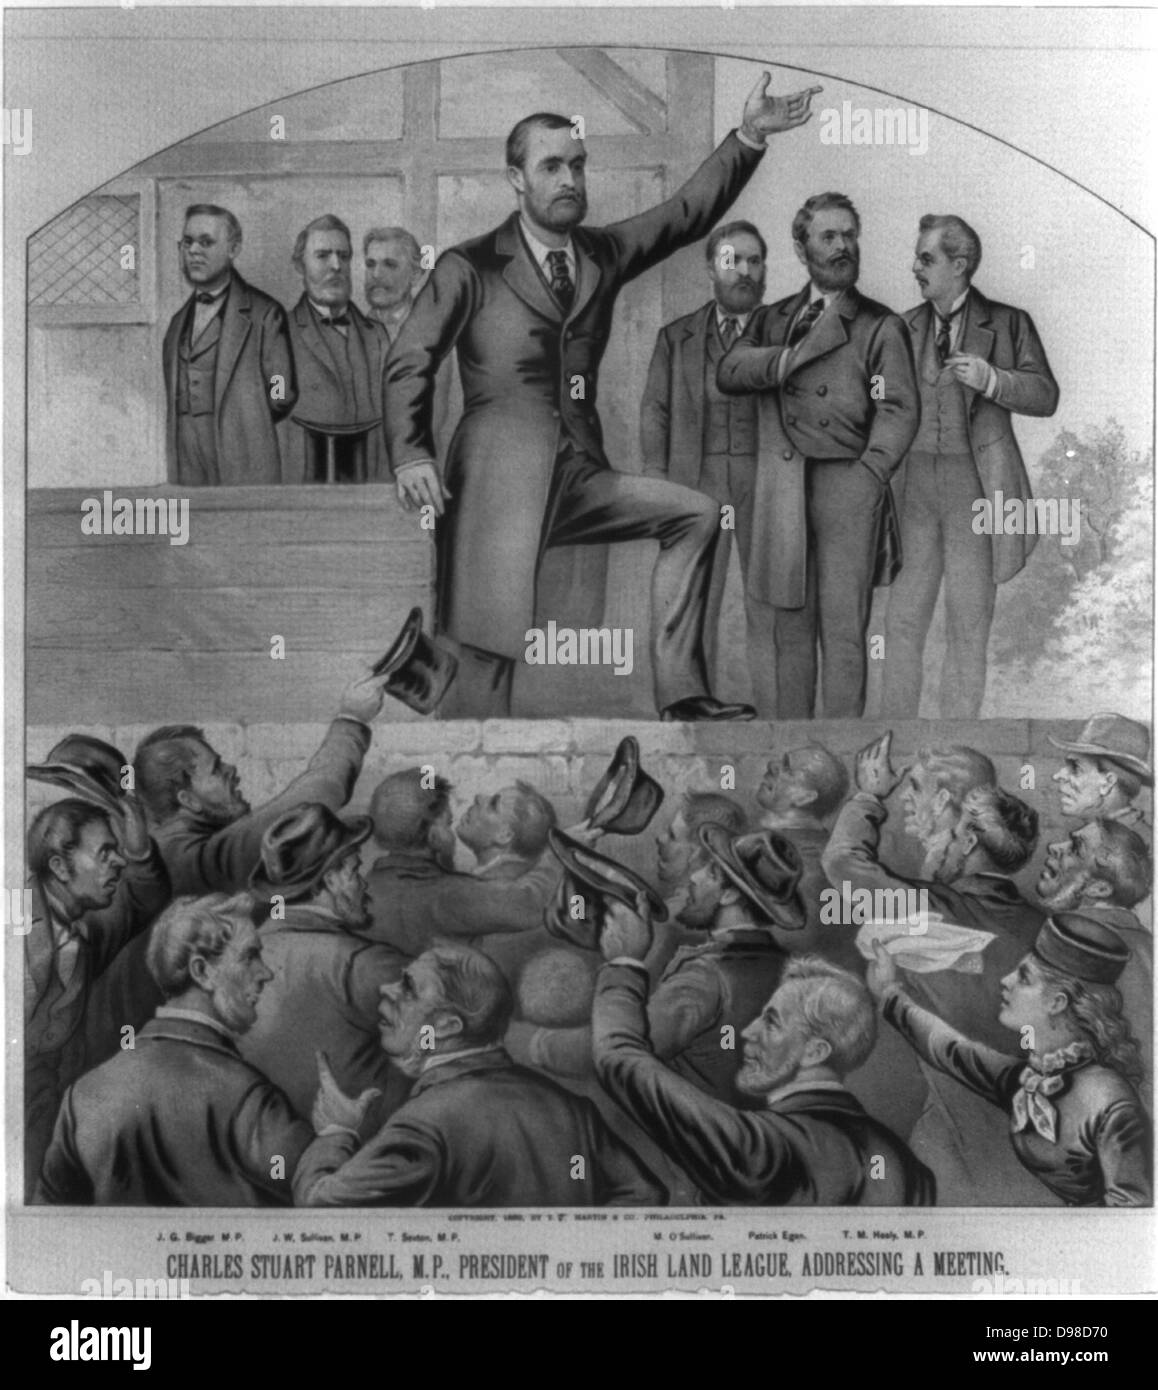 Charles Stewart Parnell (1846-1891) Irische Nationalisten, politische Führer und Meister der Home Rule. Parnell, Präsident der Irish Land League, die für eine Sitzung. Lithographie, c 1883. Stockfoto